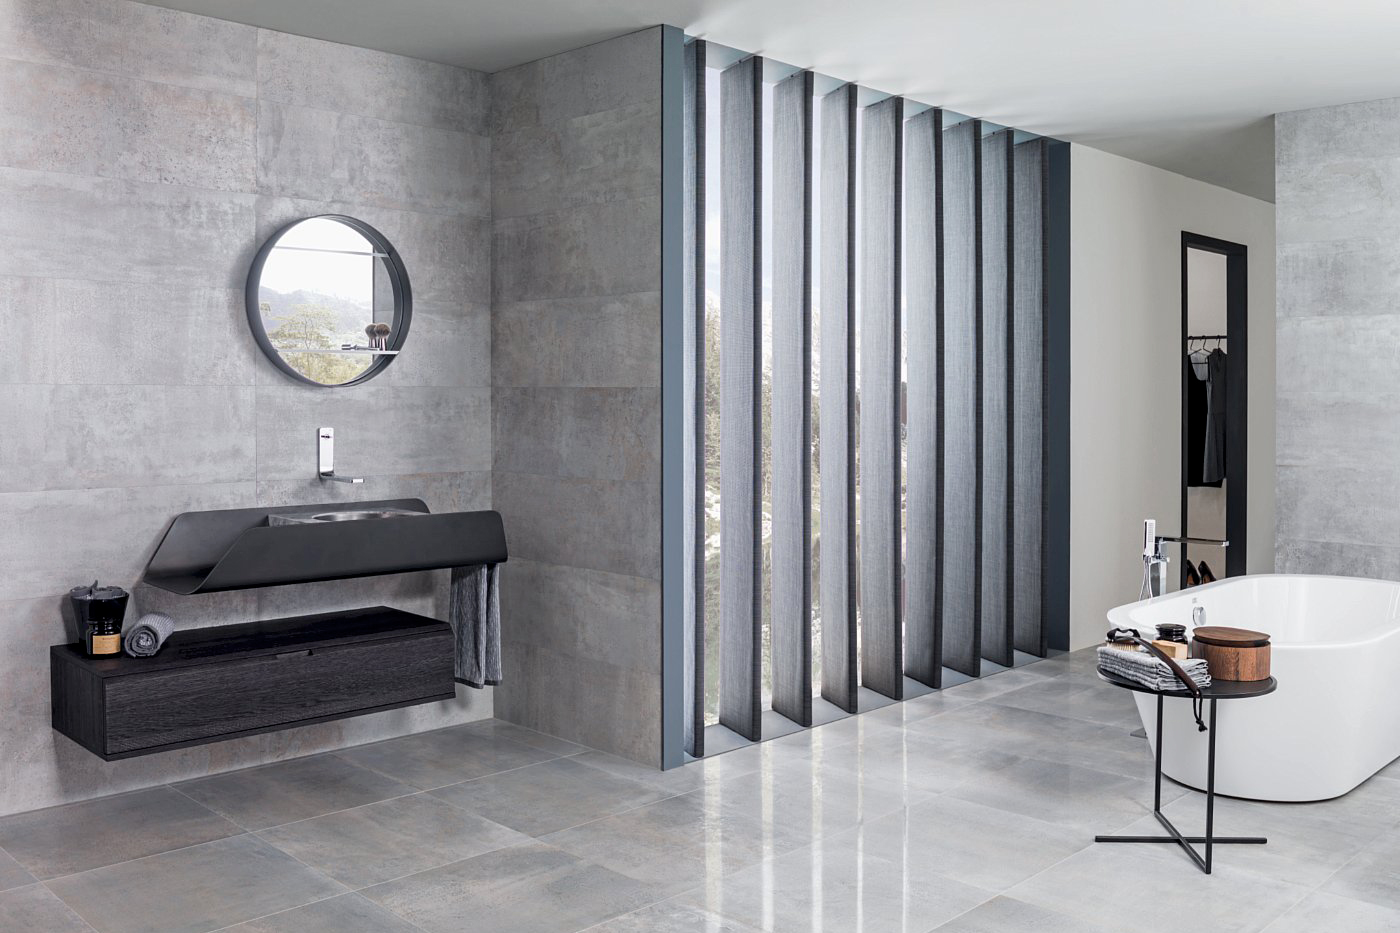 Badezimmer futuristisch: graue Fliesen, freistehende Badewanne